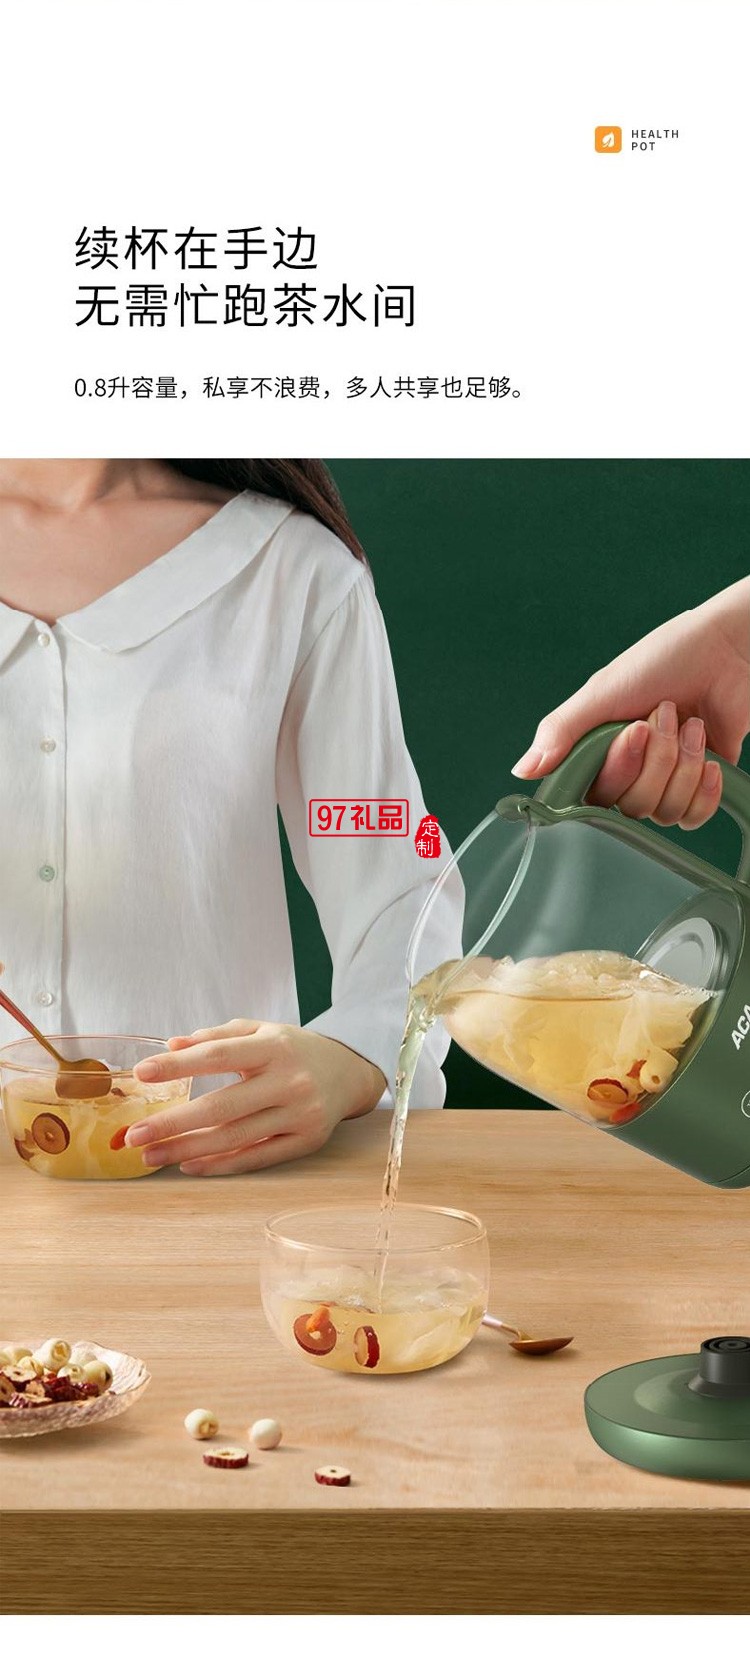 液体加热器多功能养生壶分体式花茶壶 定制公司广告礼品